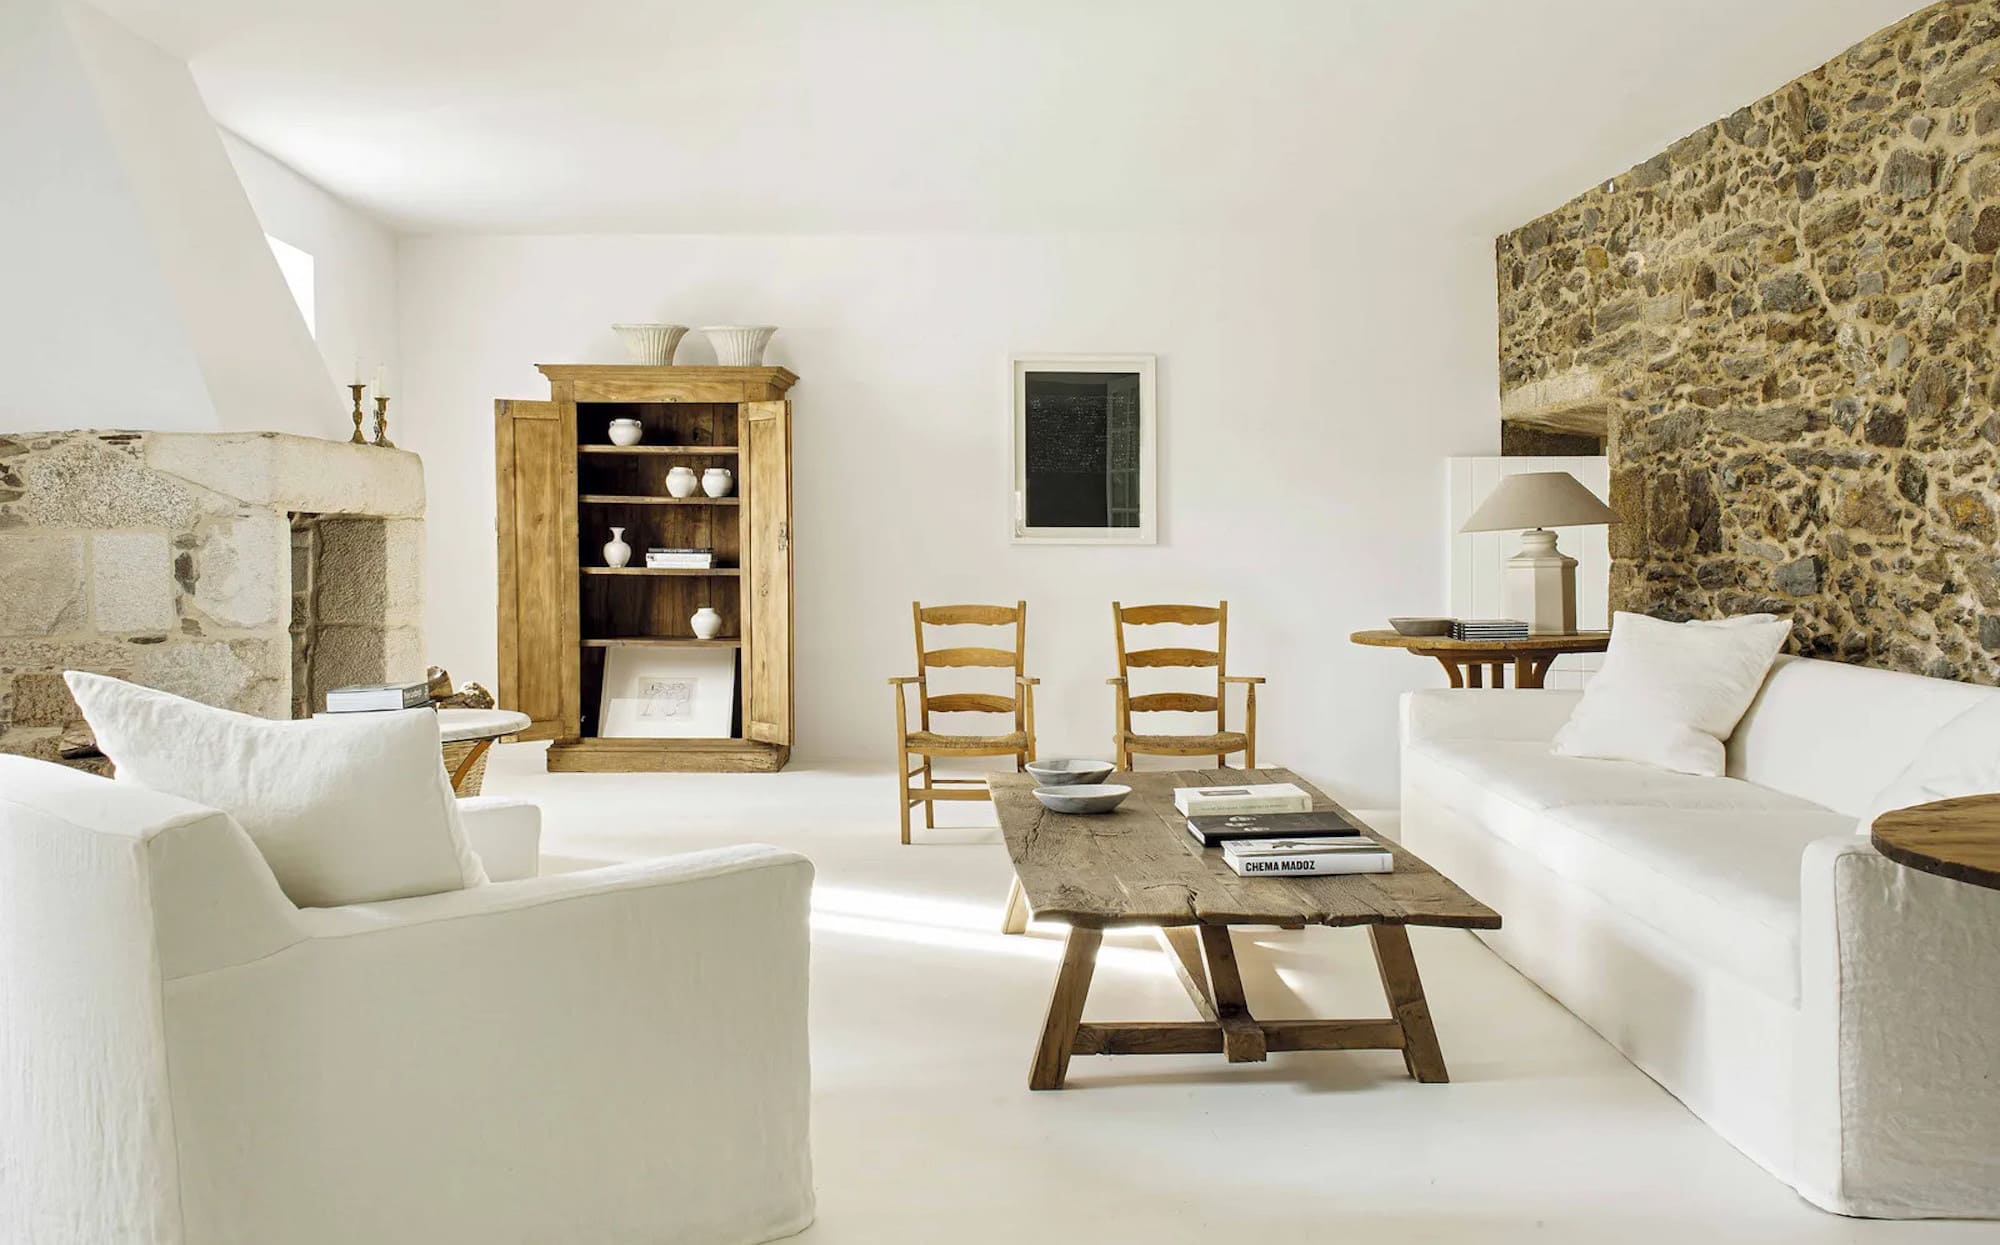 Comment avoir une maison minimaliste ?